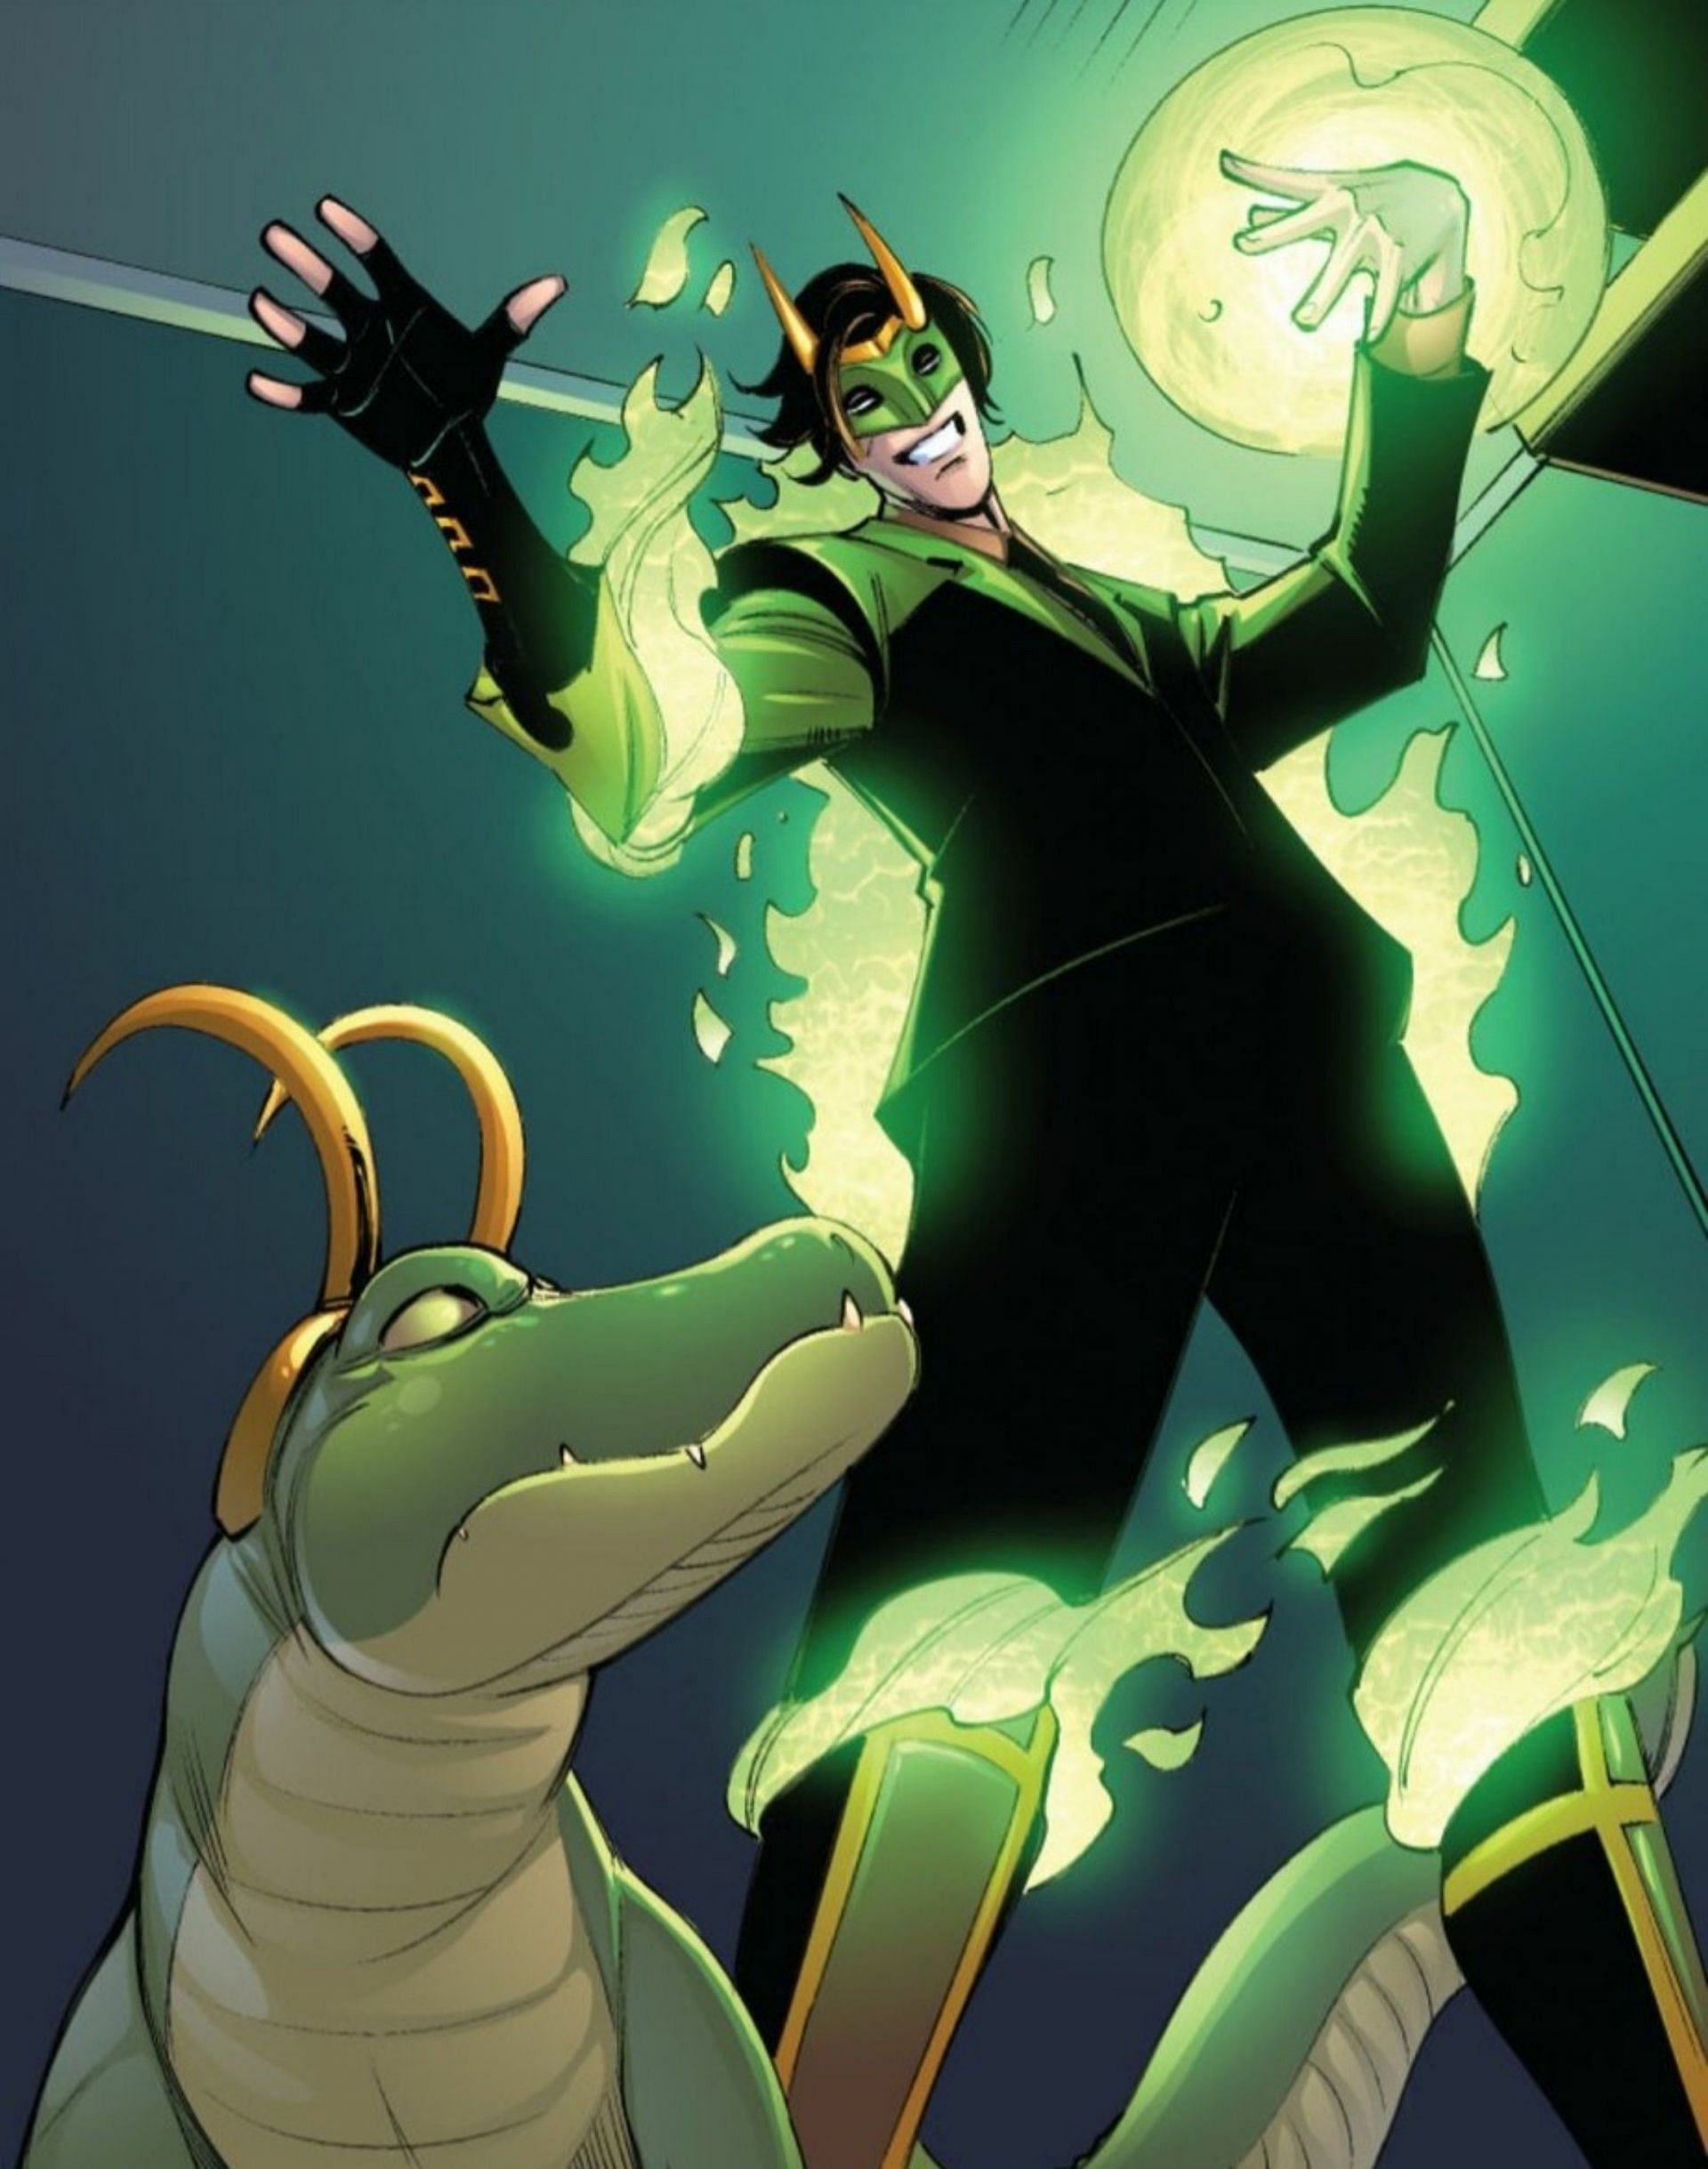 Alligator Loki and Loki from the comic (Image via Marvel Comics)